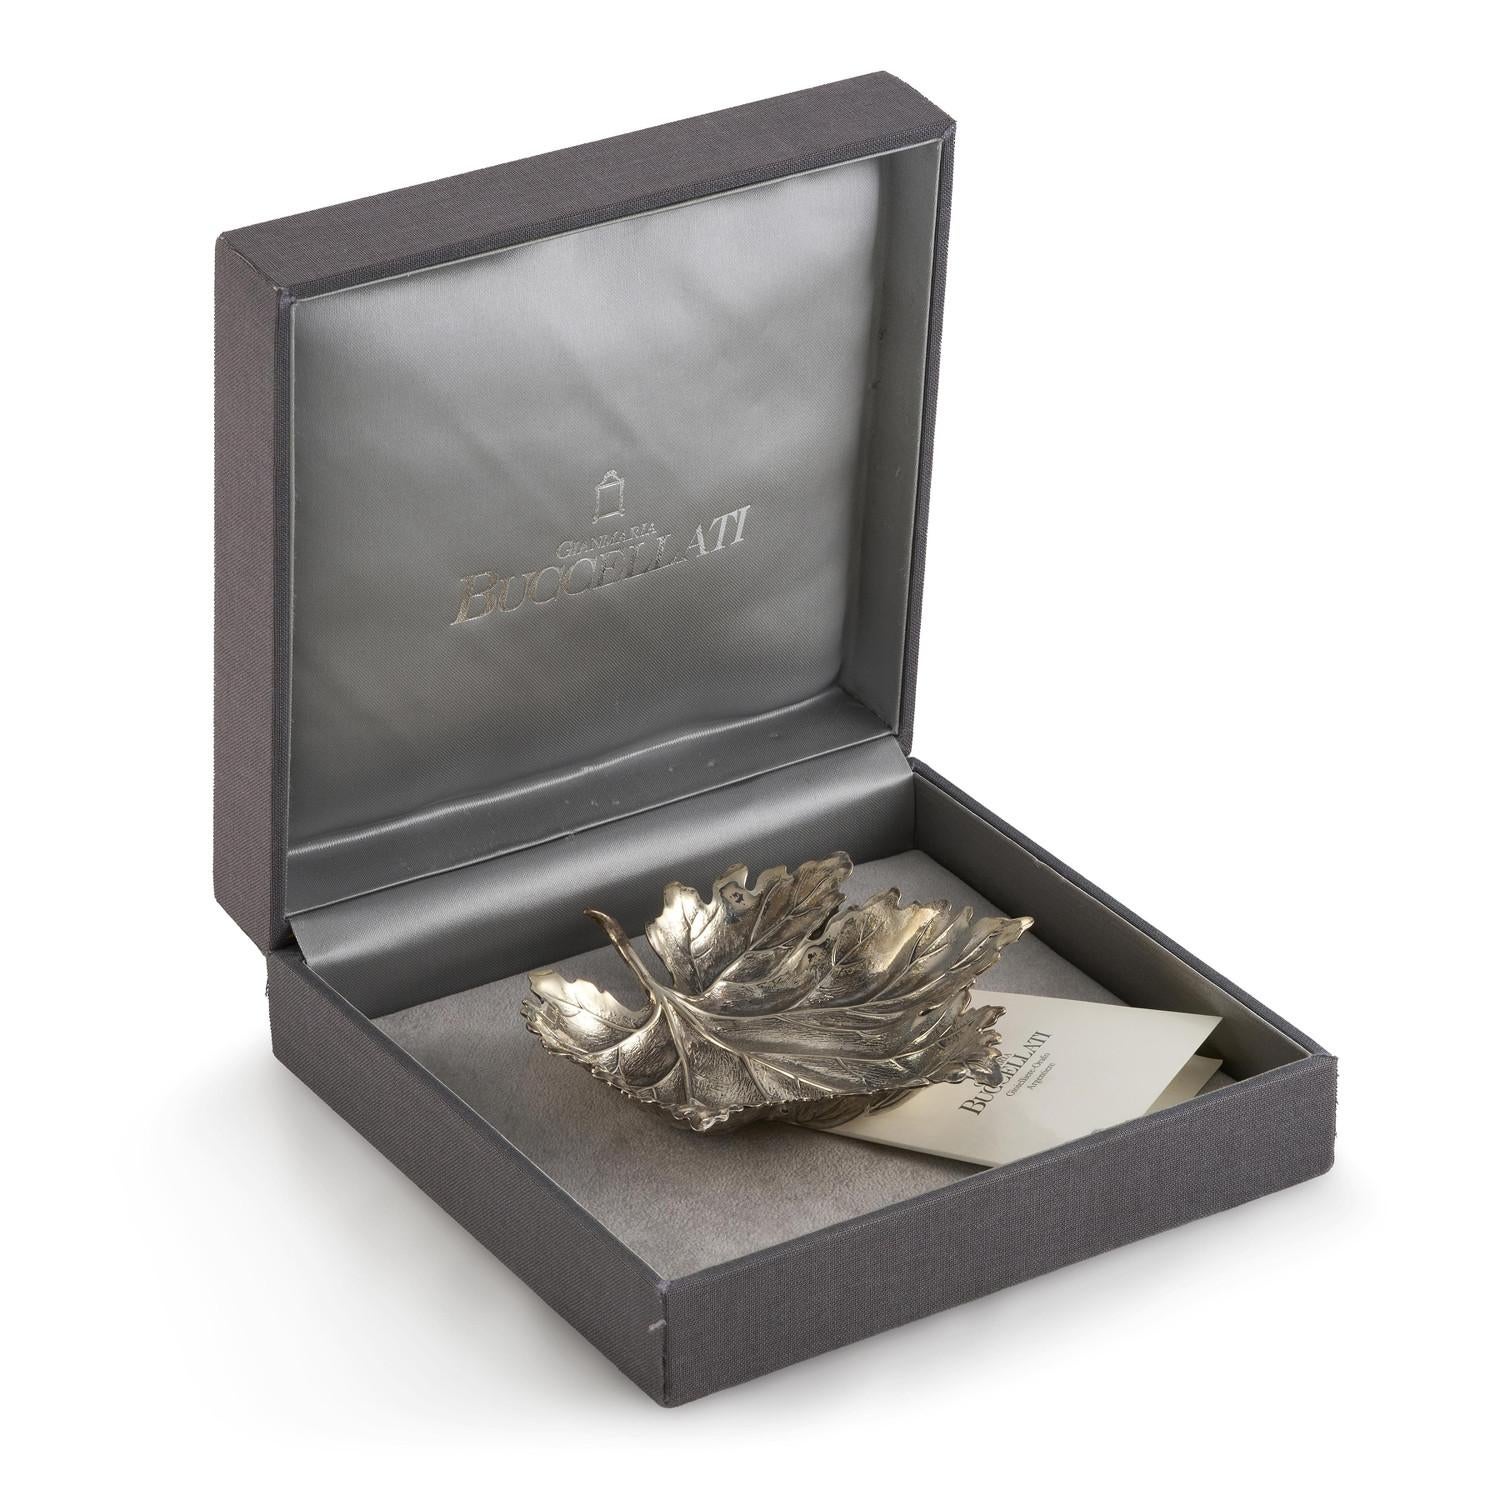 Aschenbecher aus Silber von Buccellati für Damen oder Herren im Angebot